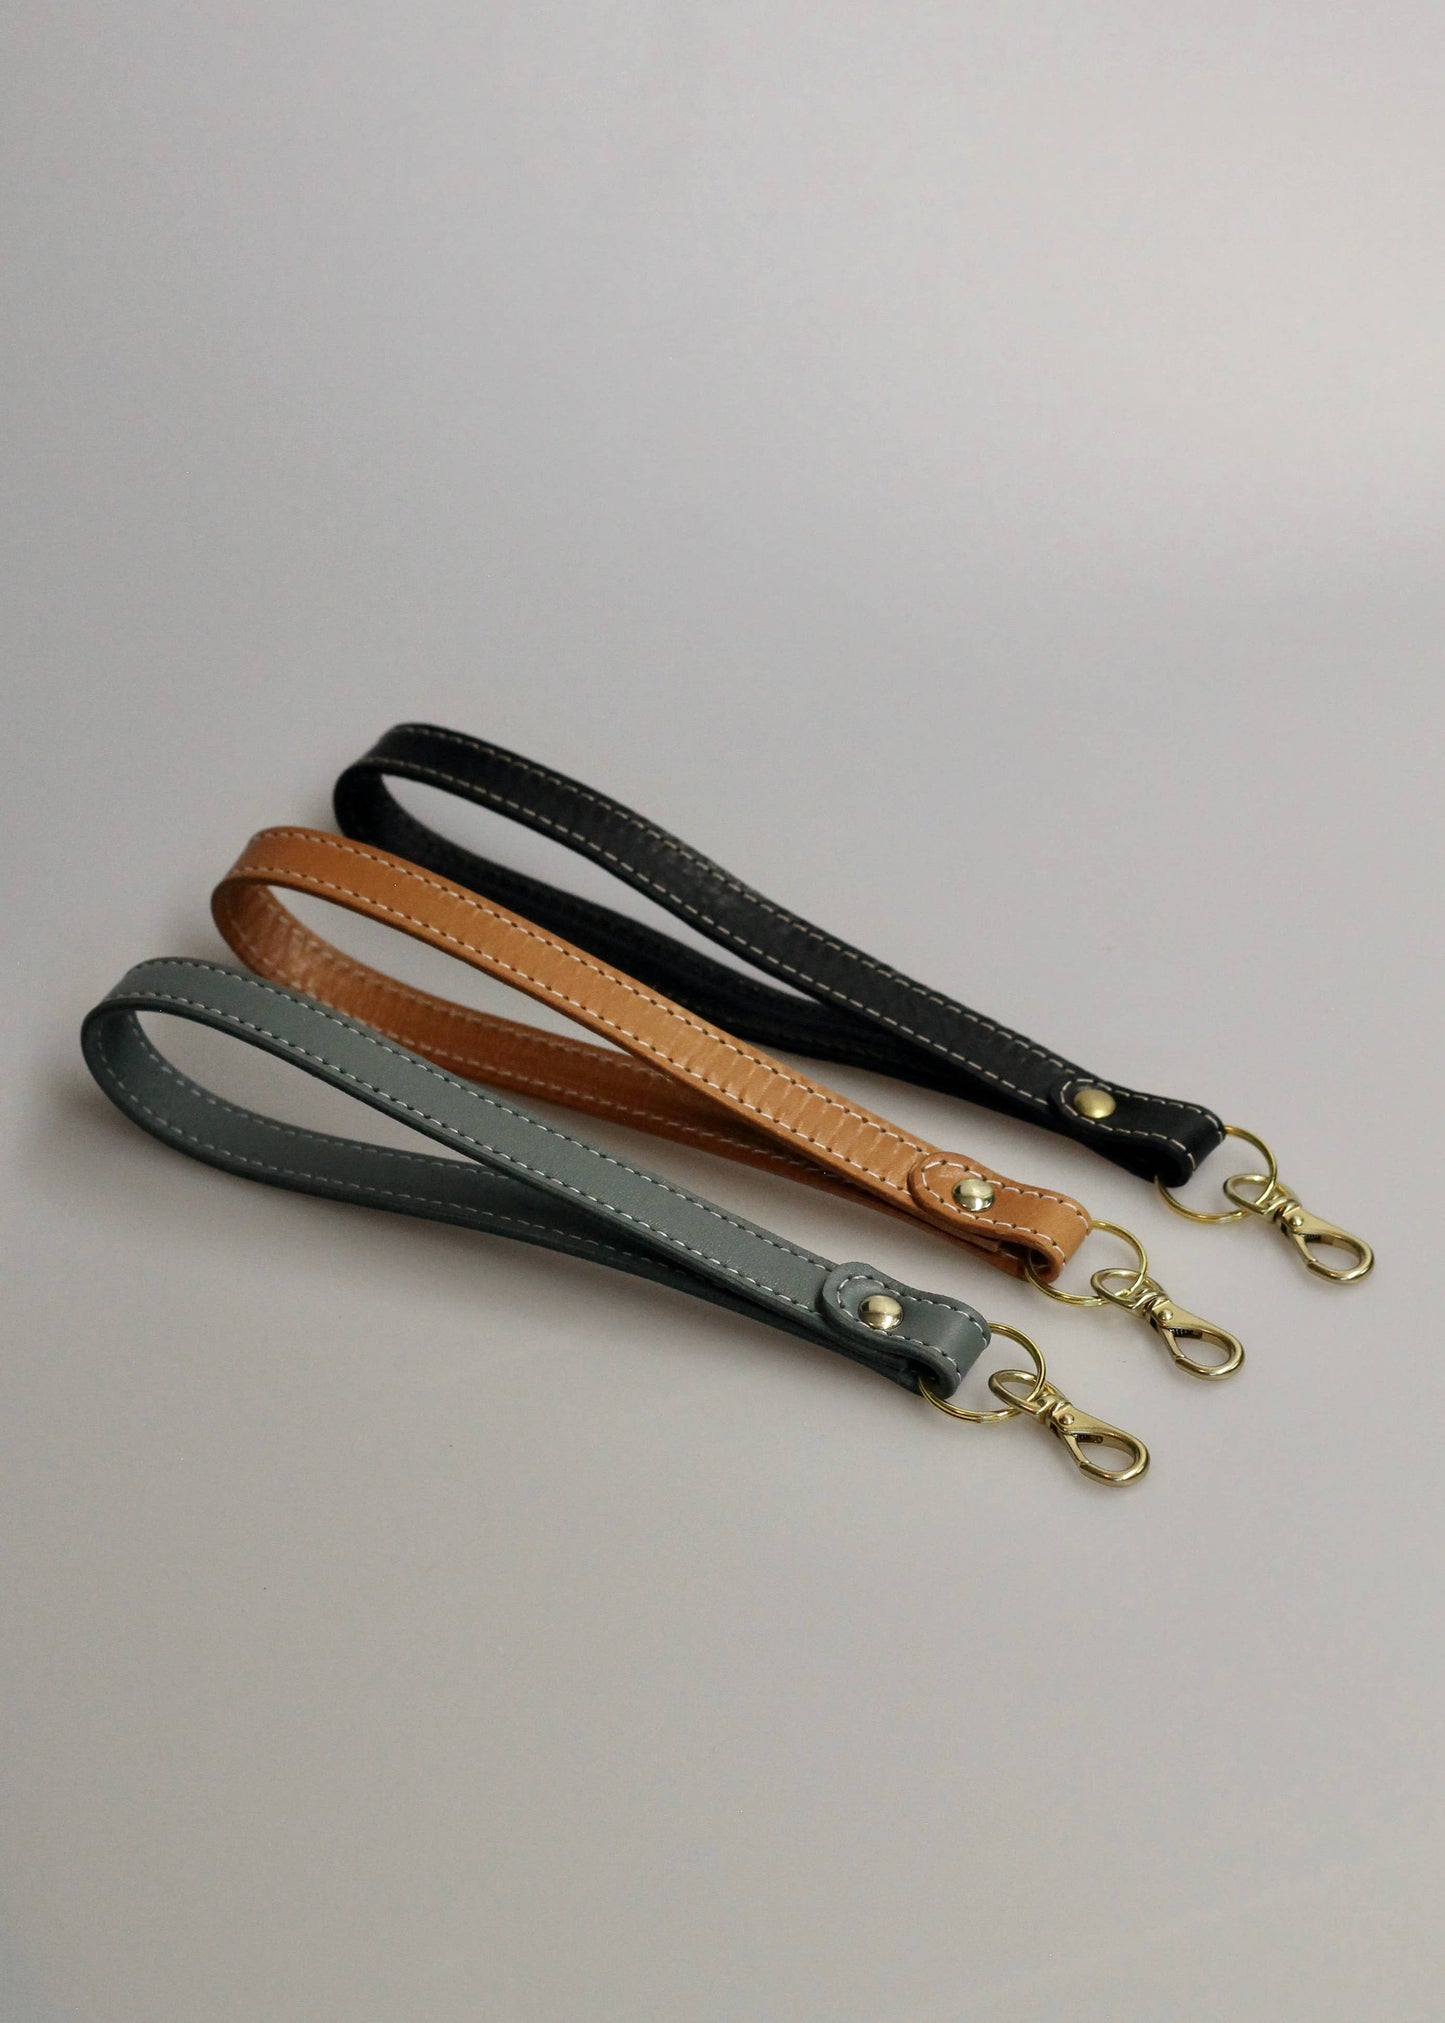 Key-leash: Saddle Tan